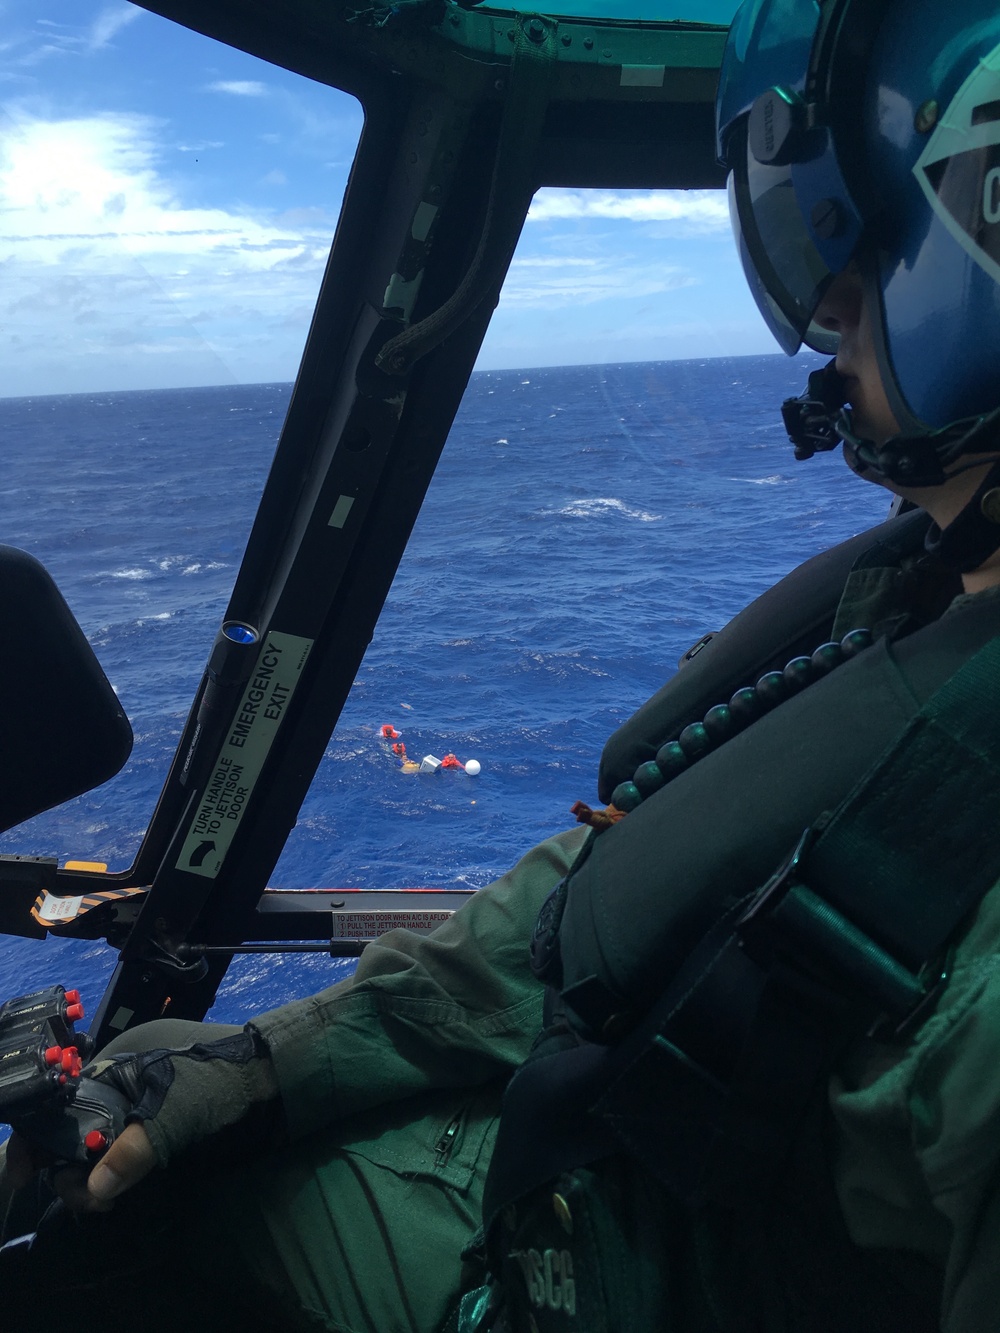 Coast Guard, Good Samaritan vessel, Puerto Rico Police marine unit rescue 5 boaters in the Mona Passage